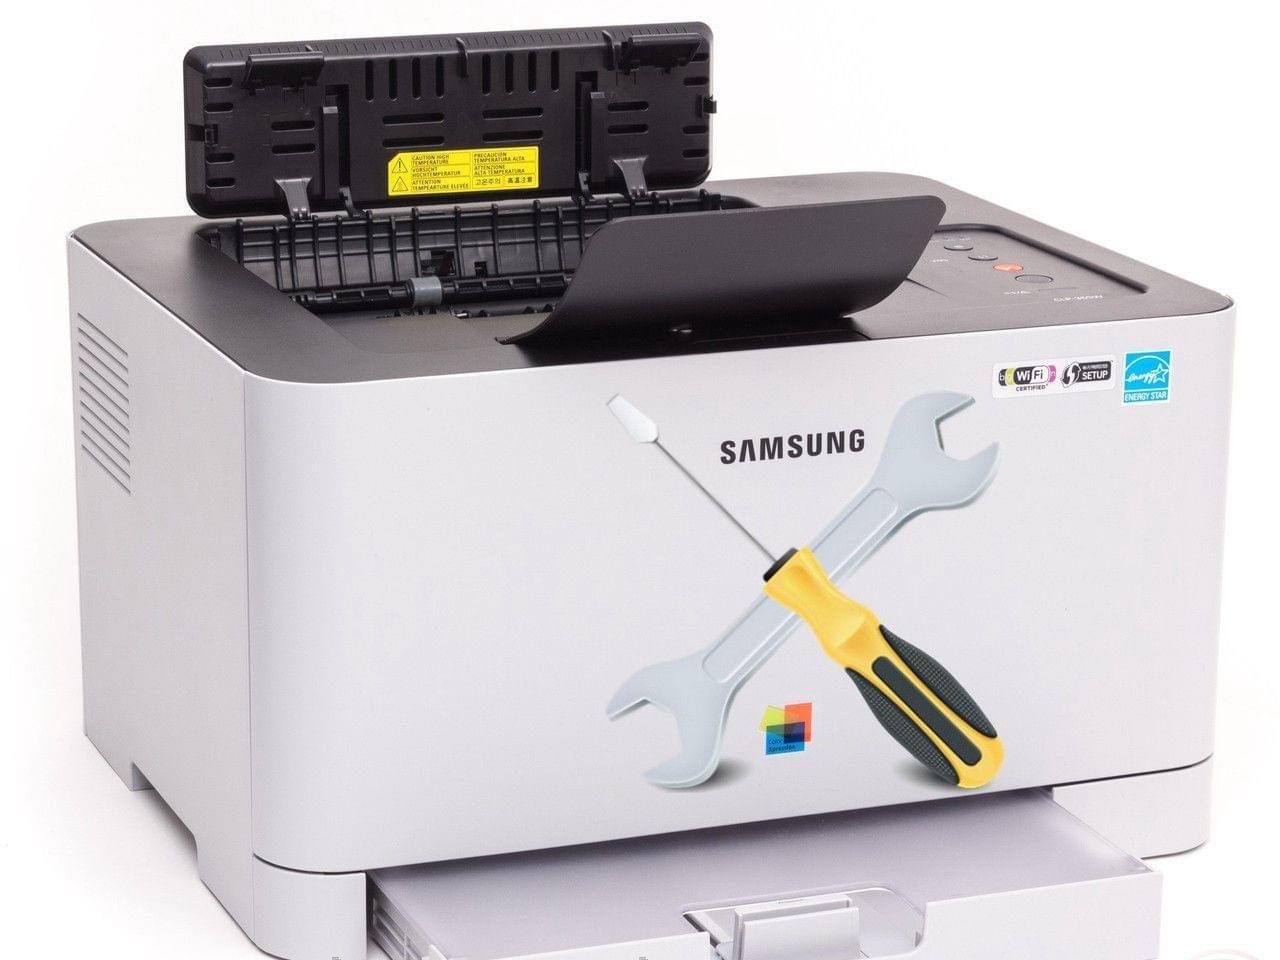 Ремонт принтера самсунг цена. Принтер самсунг цветной. Ремонт принтеров. Ремонт лазерных принтеров Samsung. Краска для принтера самсунг.